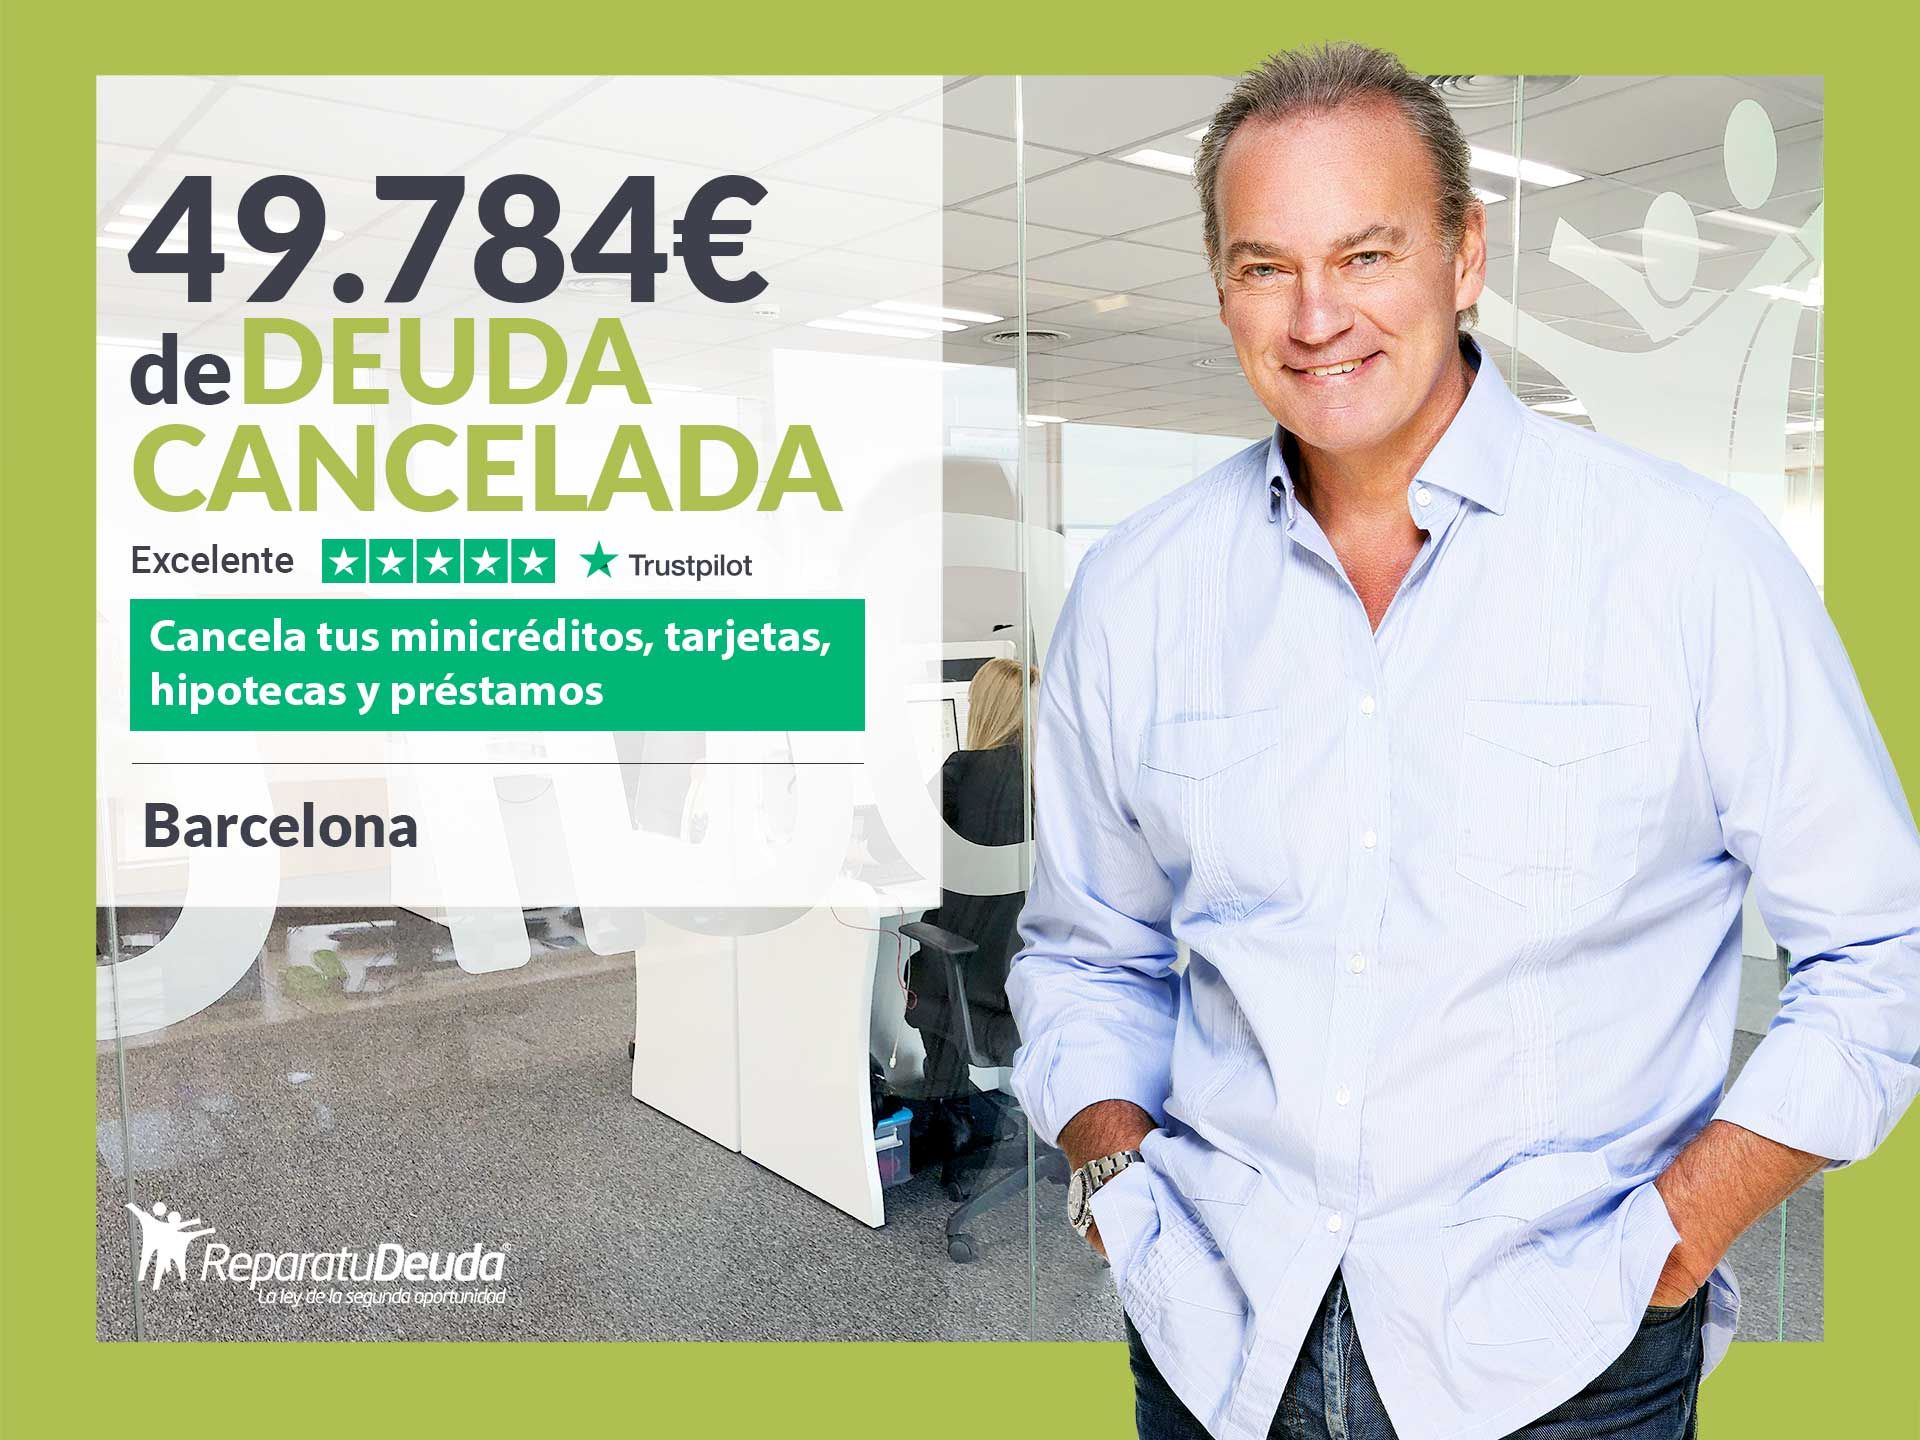 Repara tu Deuda Abogados cancela 49.784? en Barcelona (Catalunya) con la Ley de Segunda Oportunidad